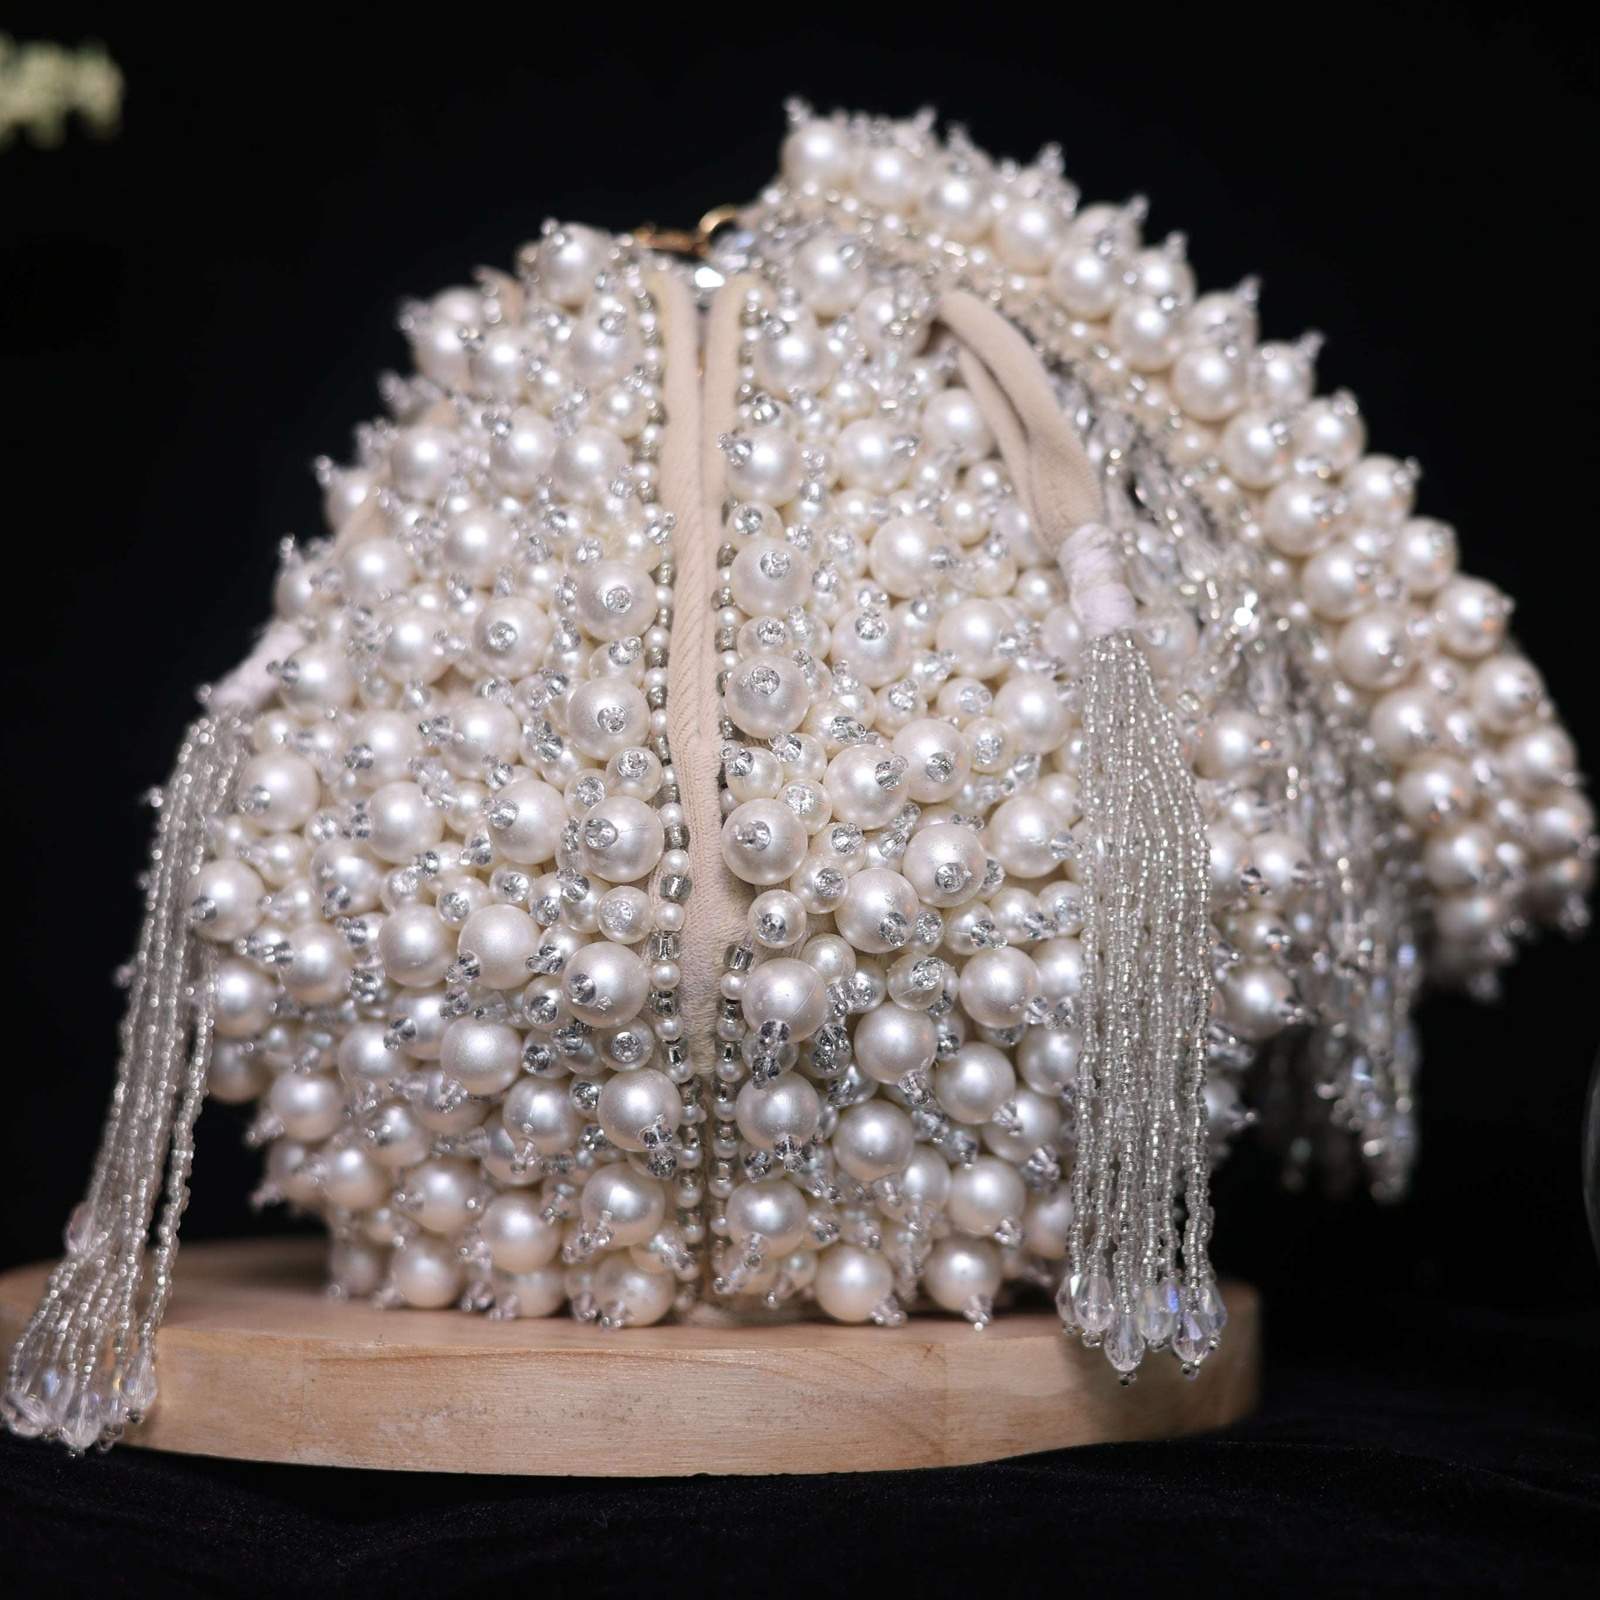 Vs Lotus pearl bag Velvet box by Shweta